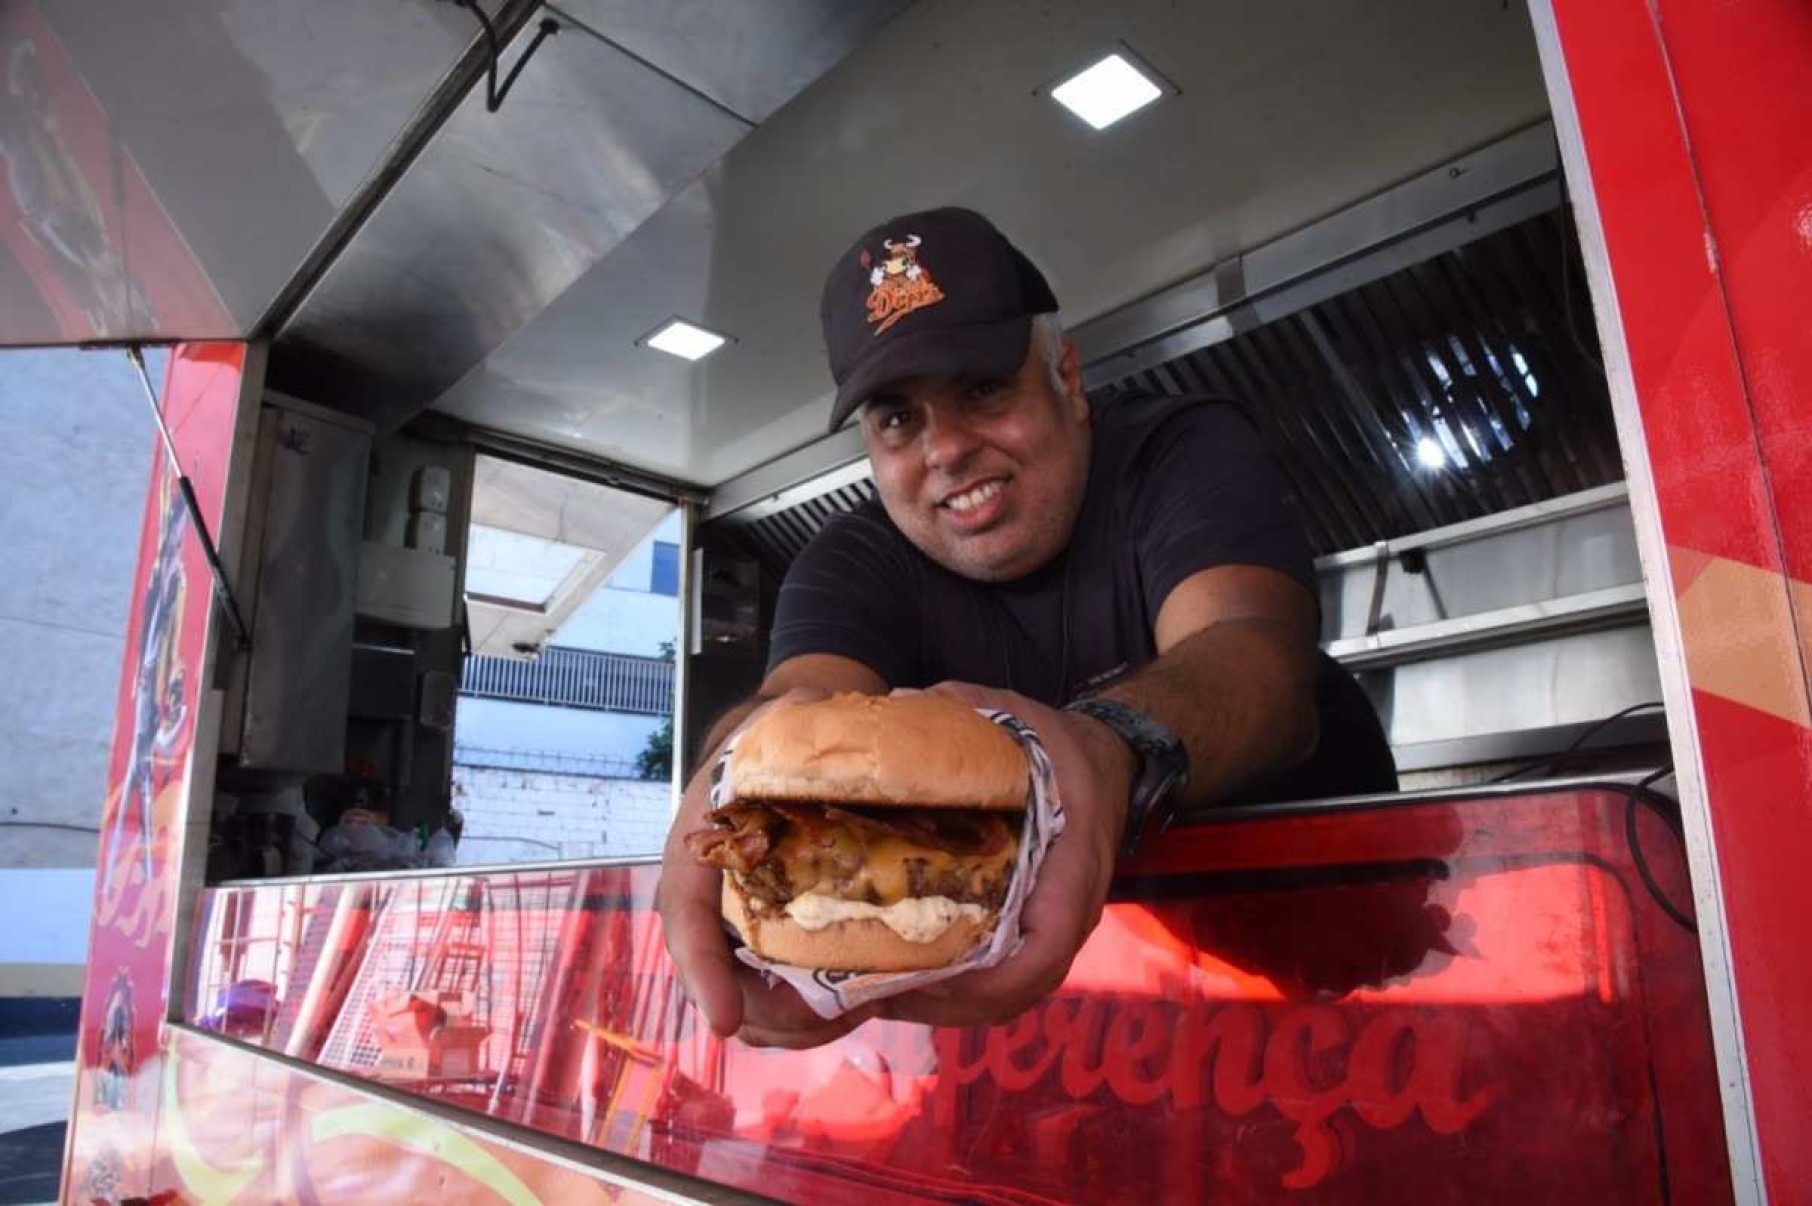 "O mais legal é que não esperamos pelo cliente, vamos até ele", destaca Felipe Borba, que dirige o Dip’s Fine Burger desde 2015